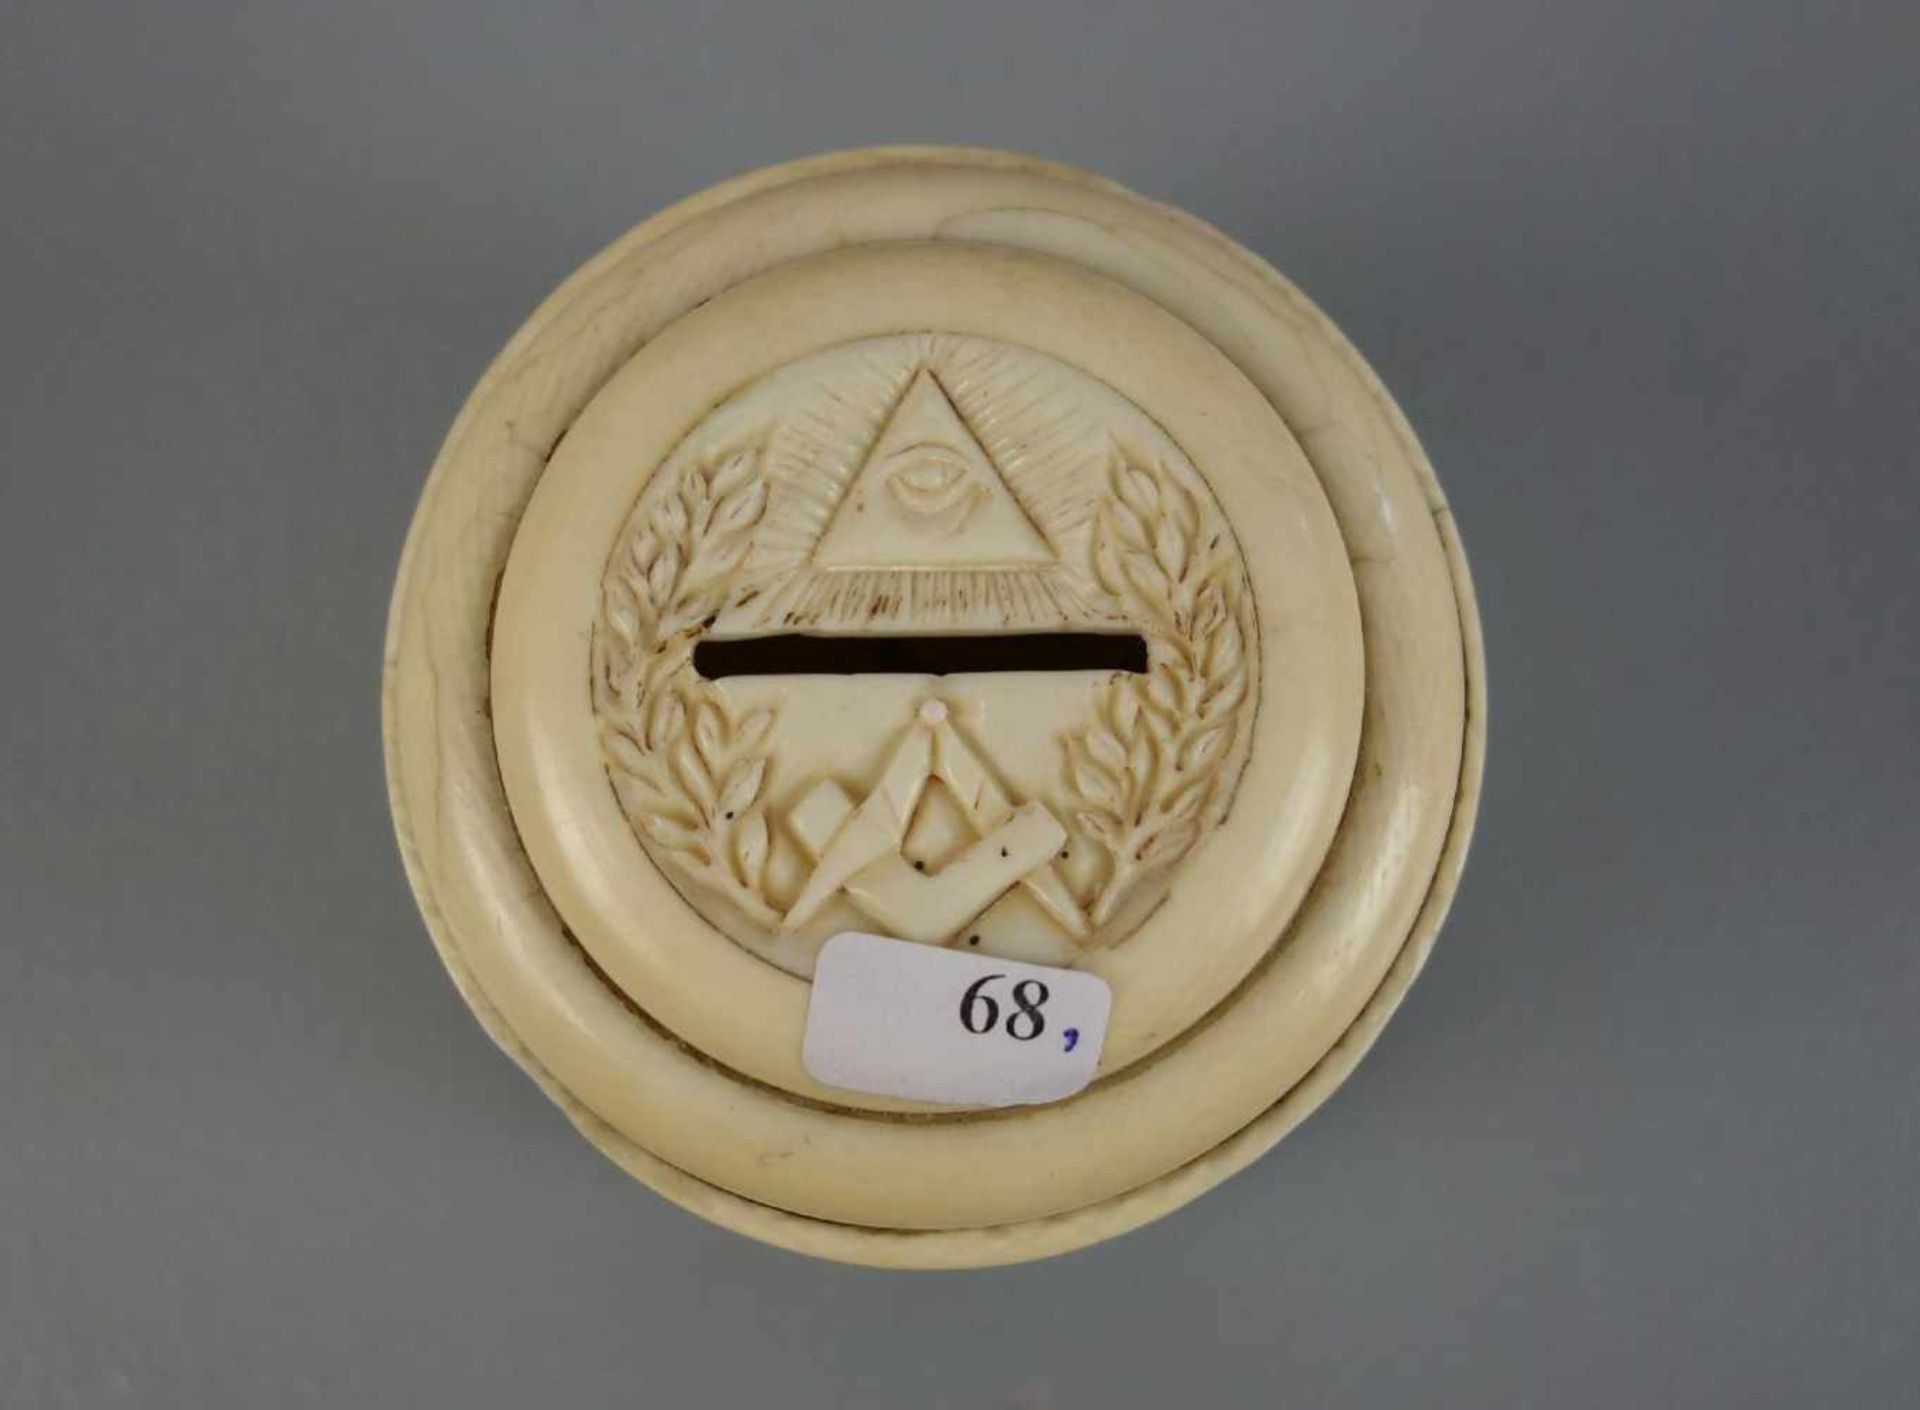 FREIMAURER SPARDOSE / masonic money box, 19. Jh., Elfenbein und Holz , Frankreich, datiert "1839" - Image 2 of 5